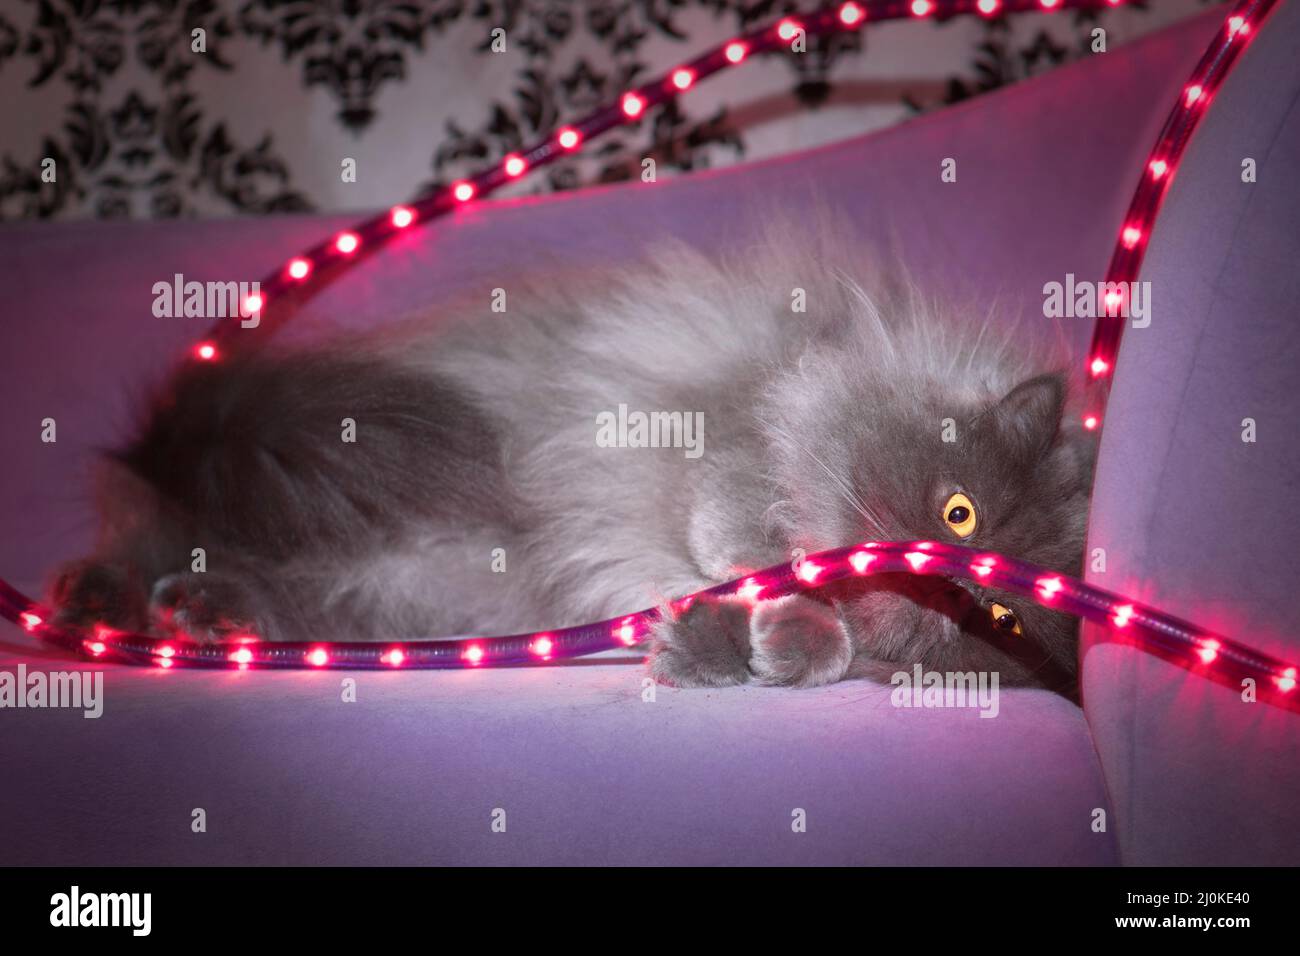 Lindo gato gris de pelo largo descansando en un sofá púrpura con luces de cuerda púrpura. Foto de stock